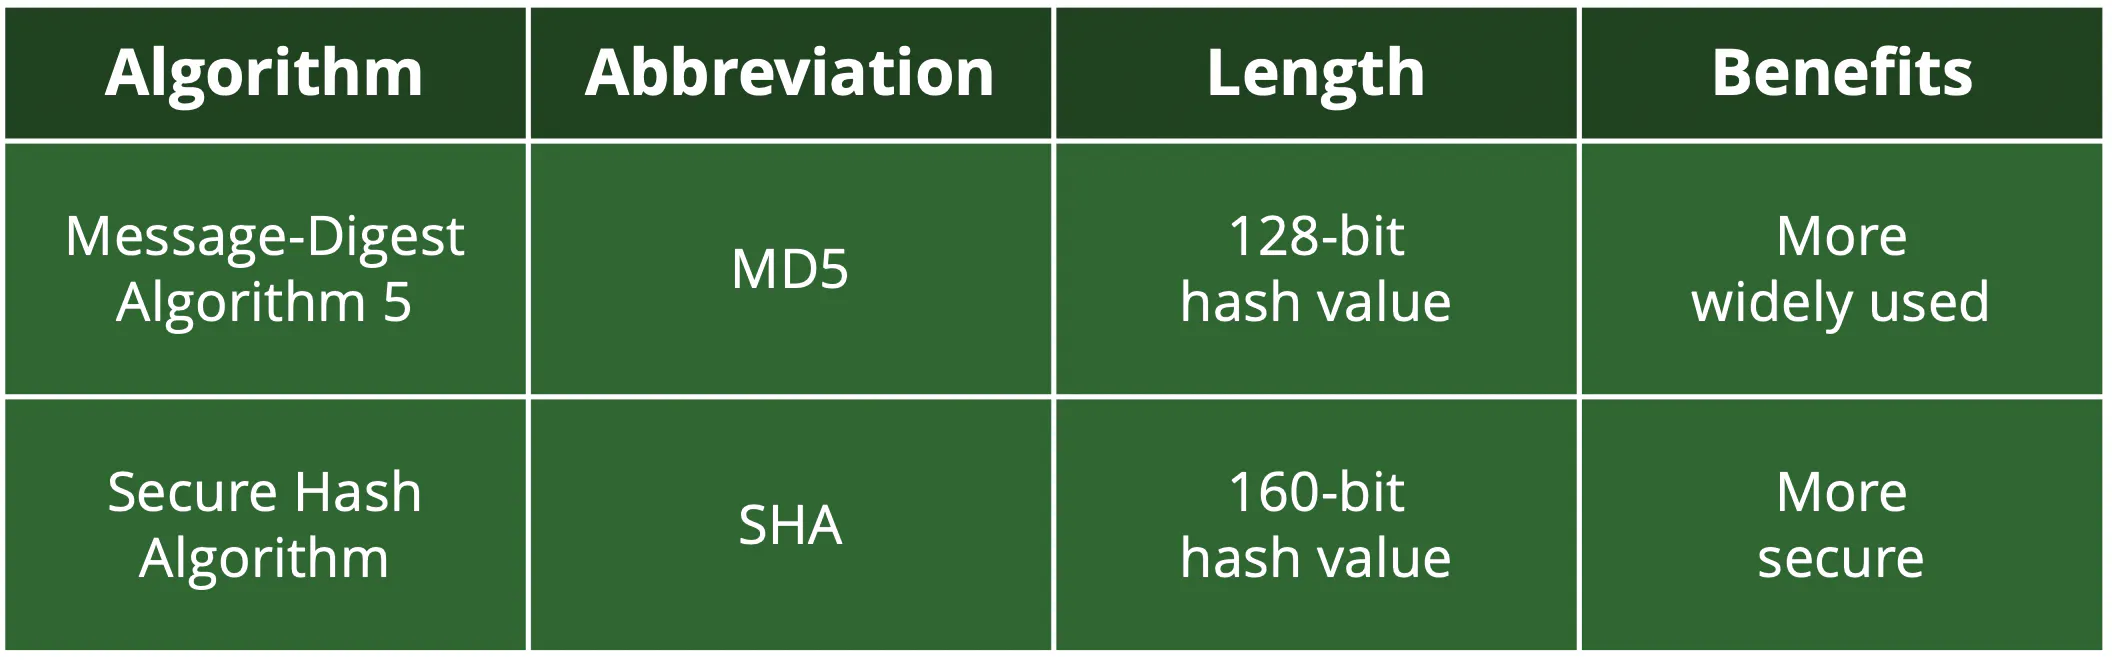 Zwei Arten von Hash-Algorithmen sind MD5 und SHA, wobei ersterer häufiger verwendet wird, während letzterer sicherer ist